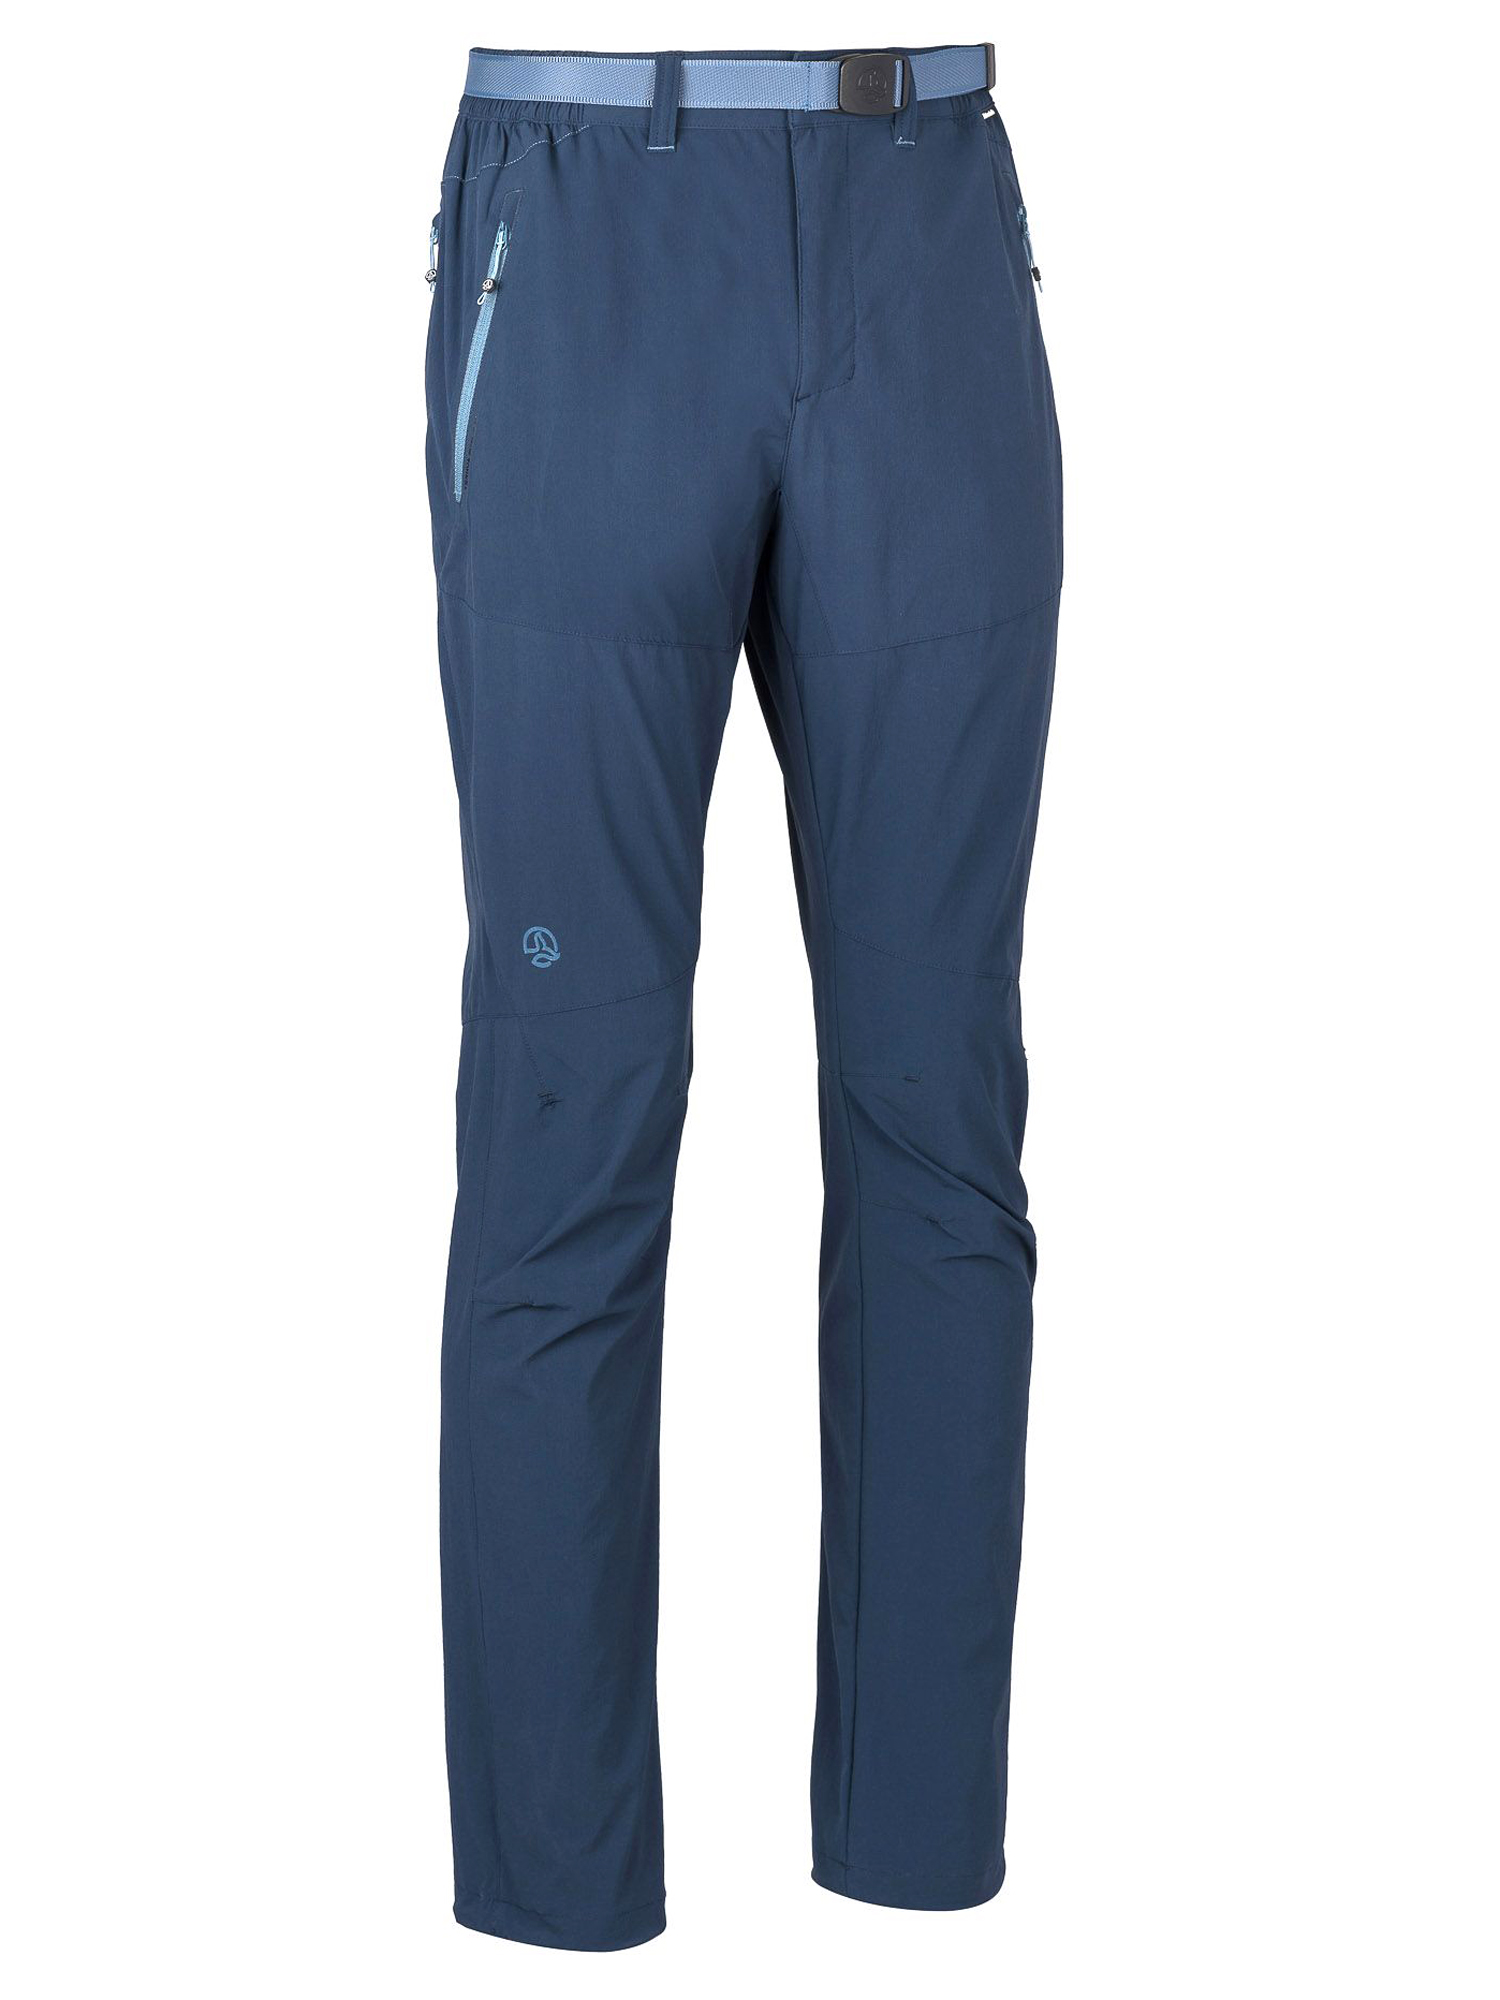 Спортивные брюки мужские Ternua Friz Pt M синие S